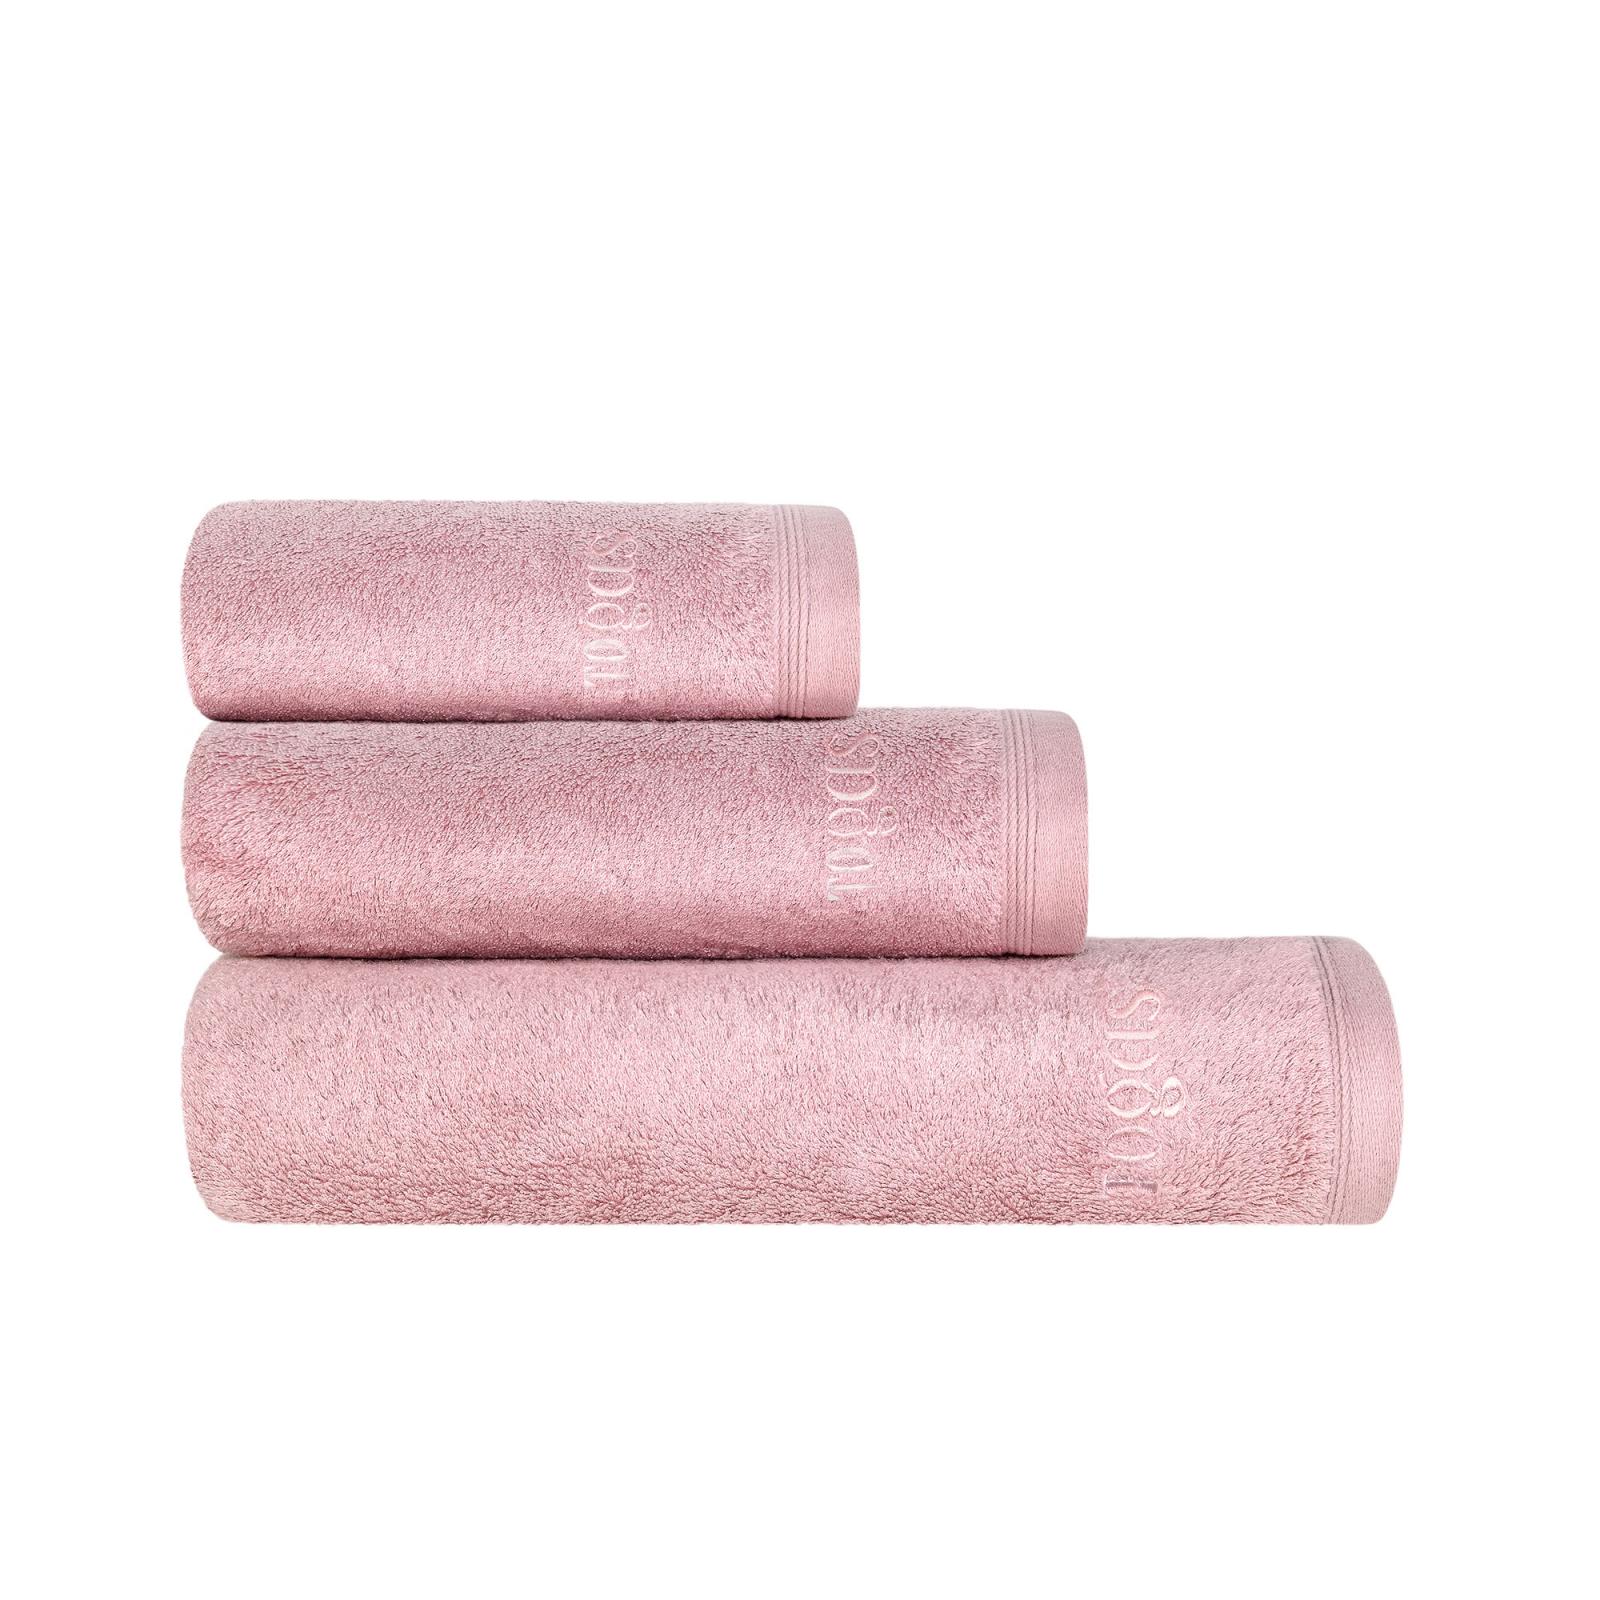 Полотенце 40х60 см Пуатье розовое Togas полотенце togas пуатье белое 70х140 см 10 00 01 0921